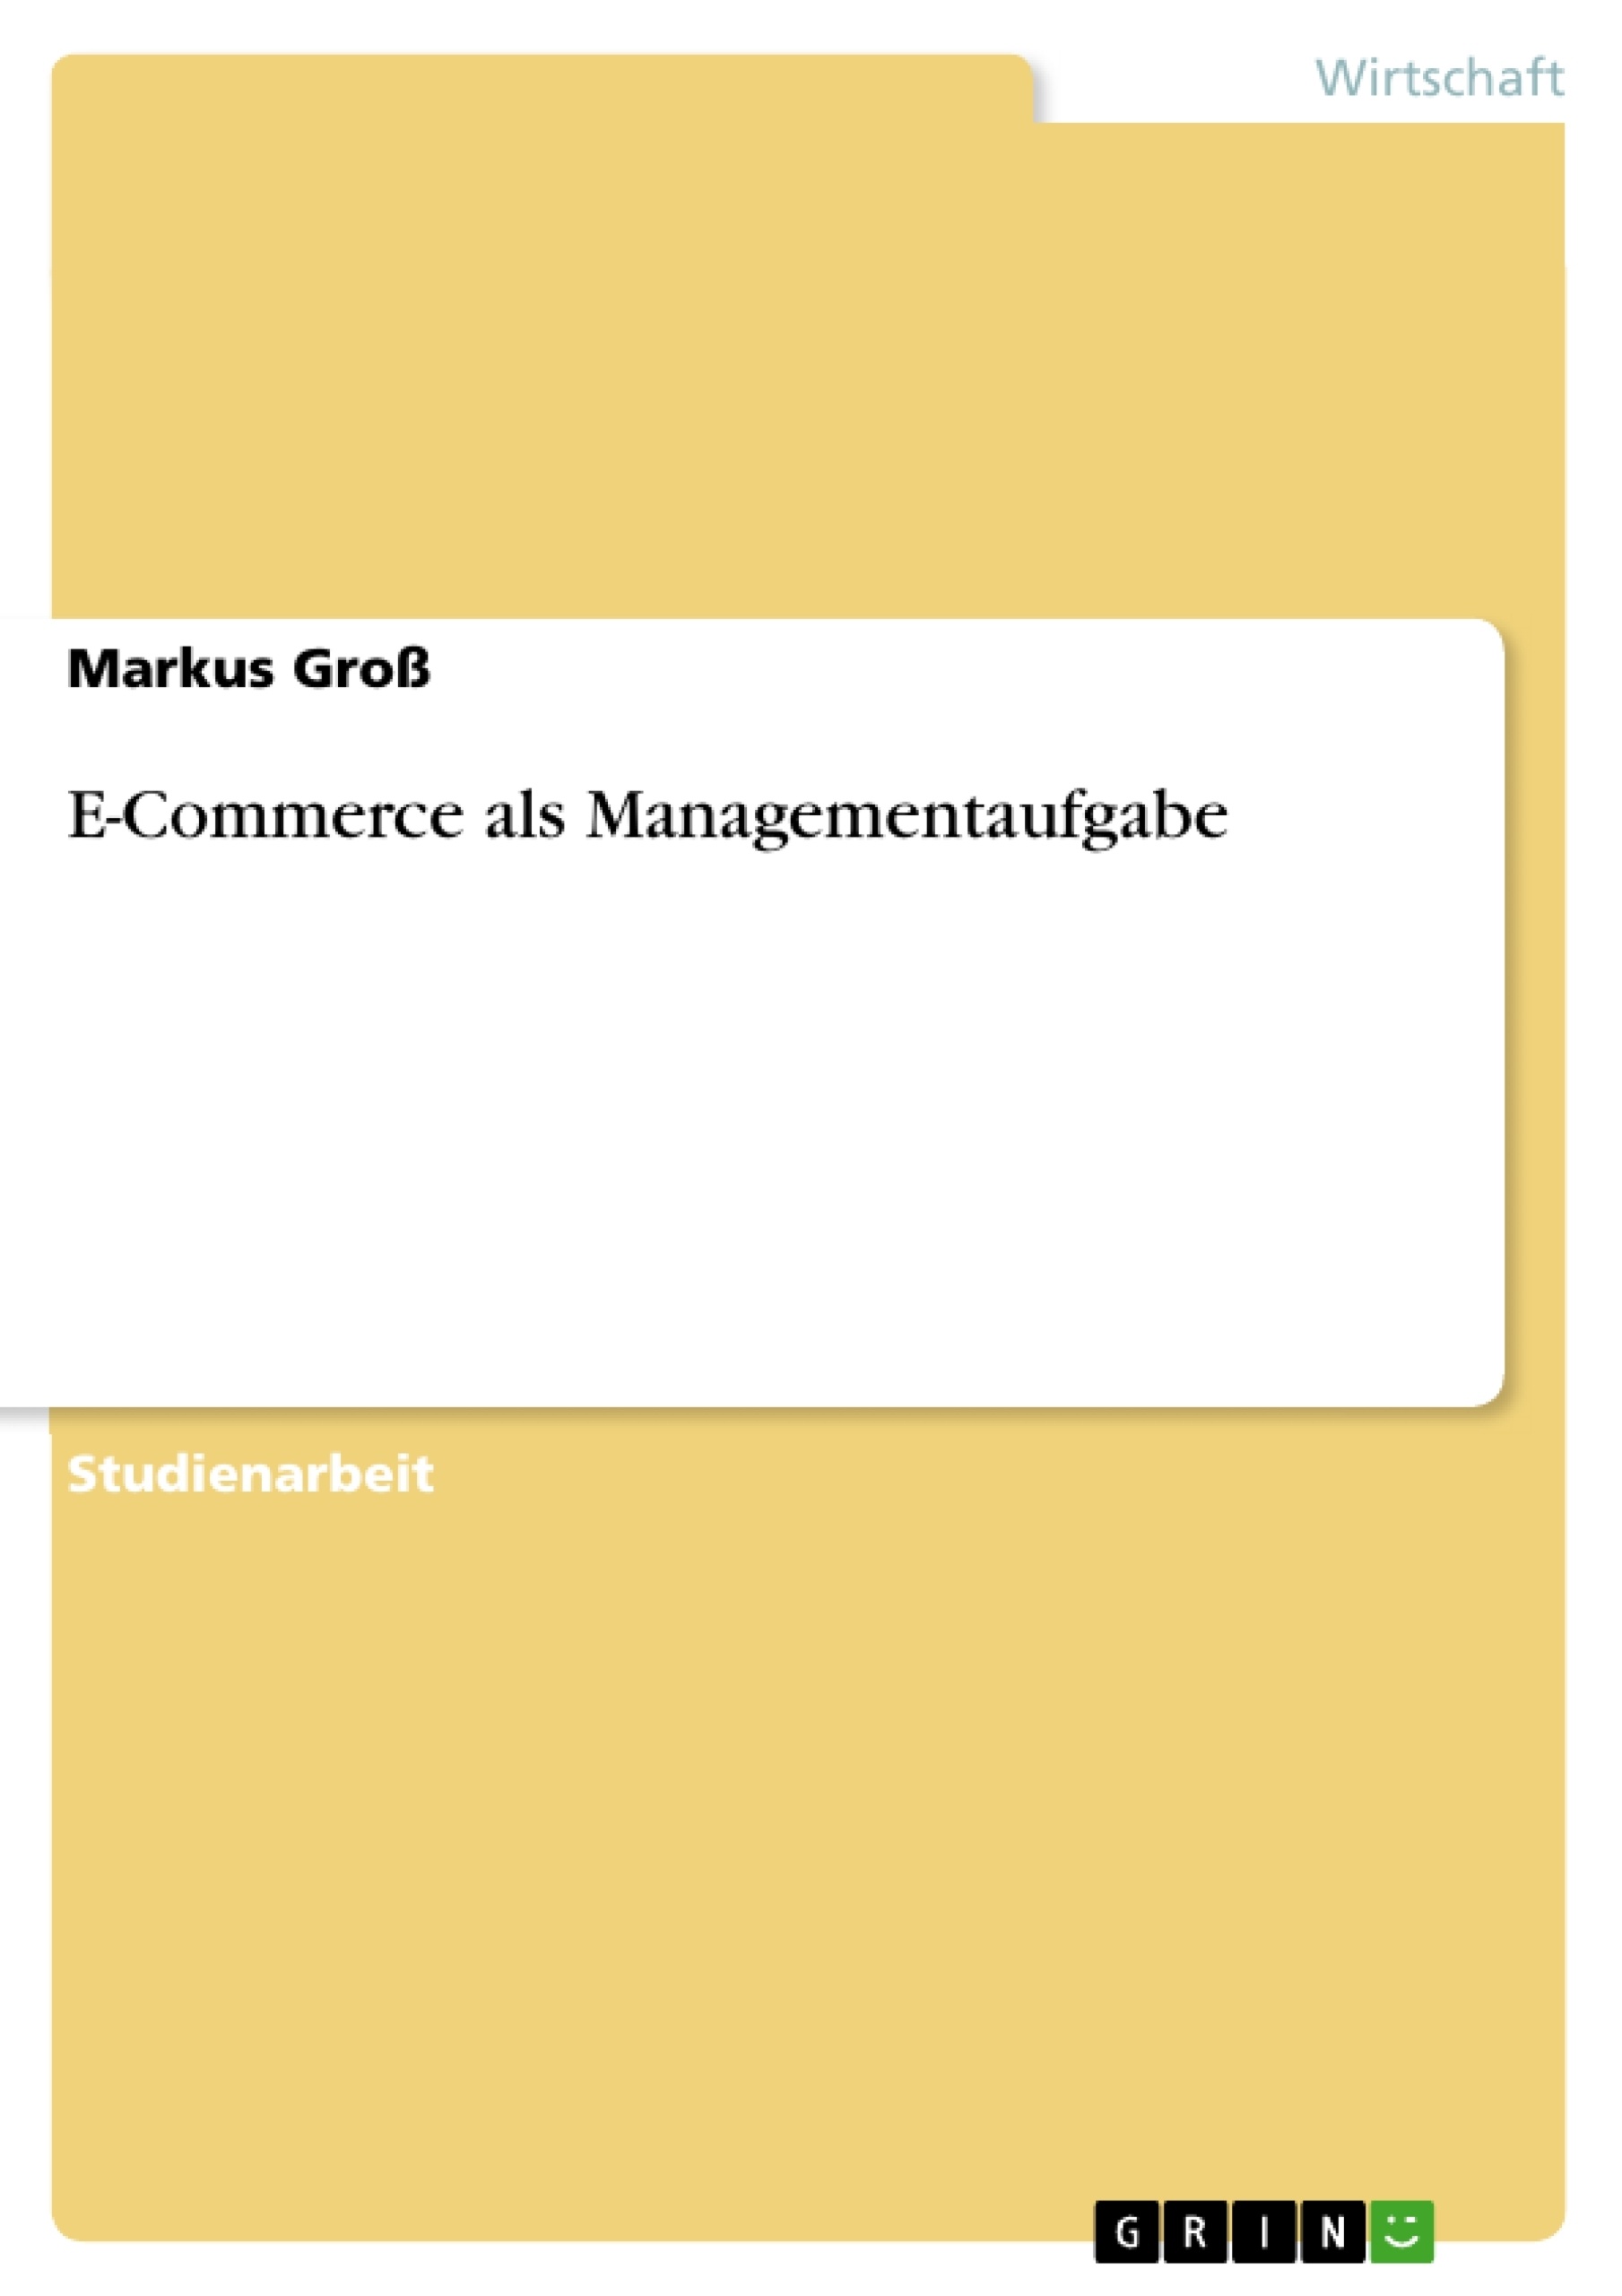 Título: E-Commerce als Managementaufgabe